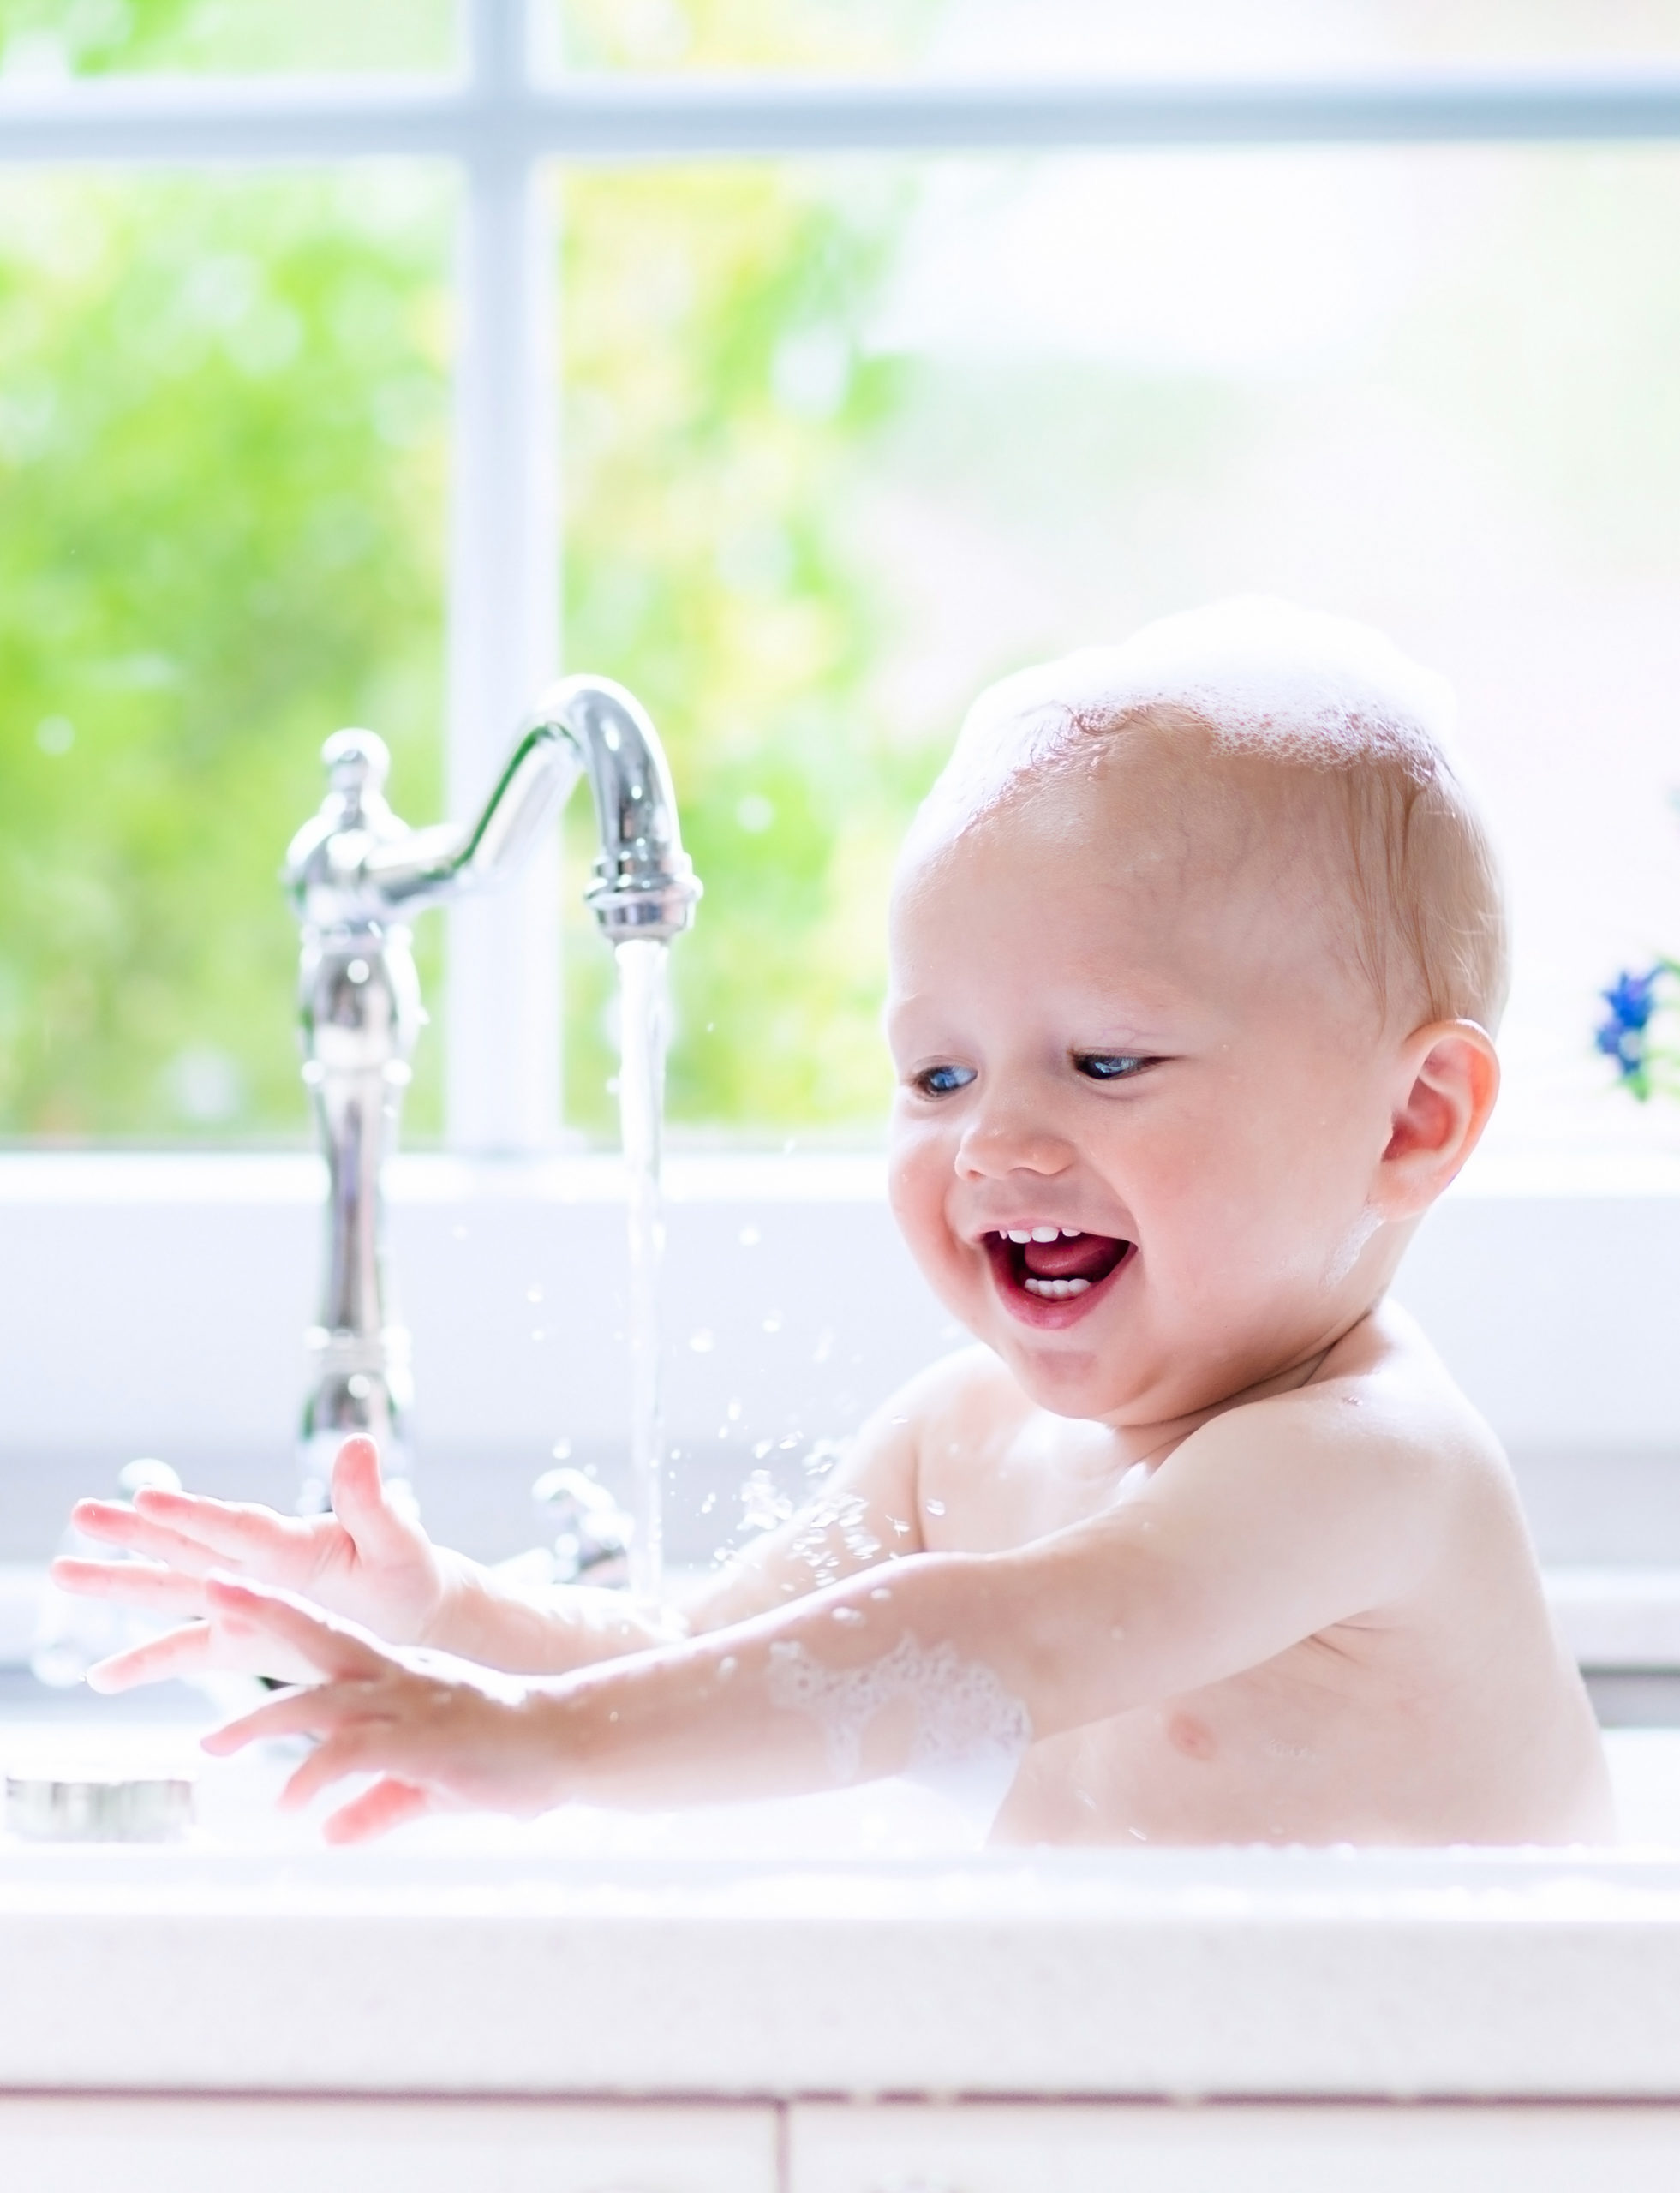 A baby enjoying hot water